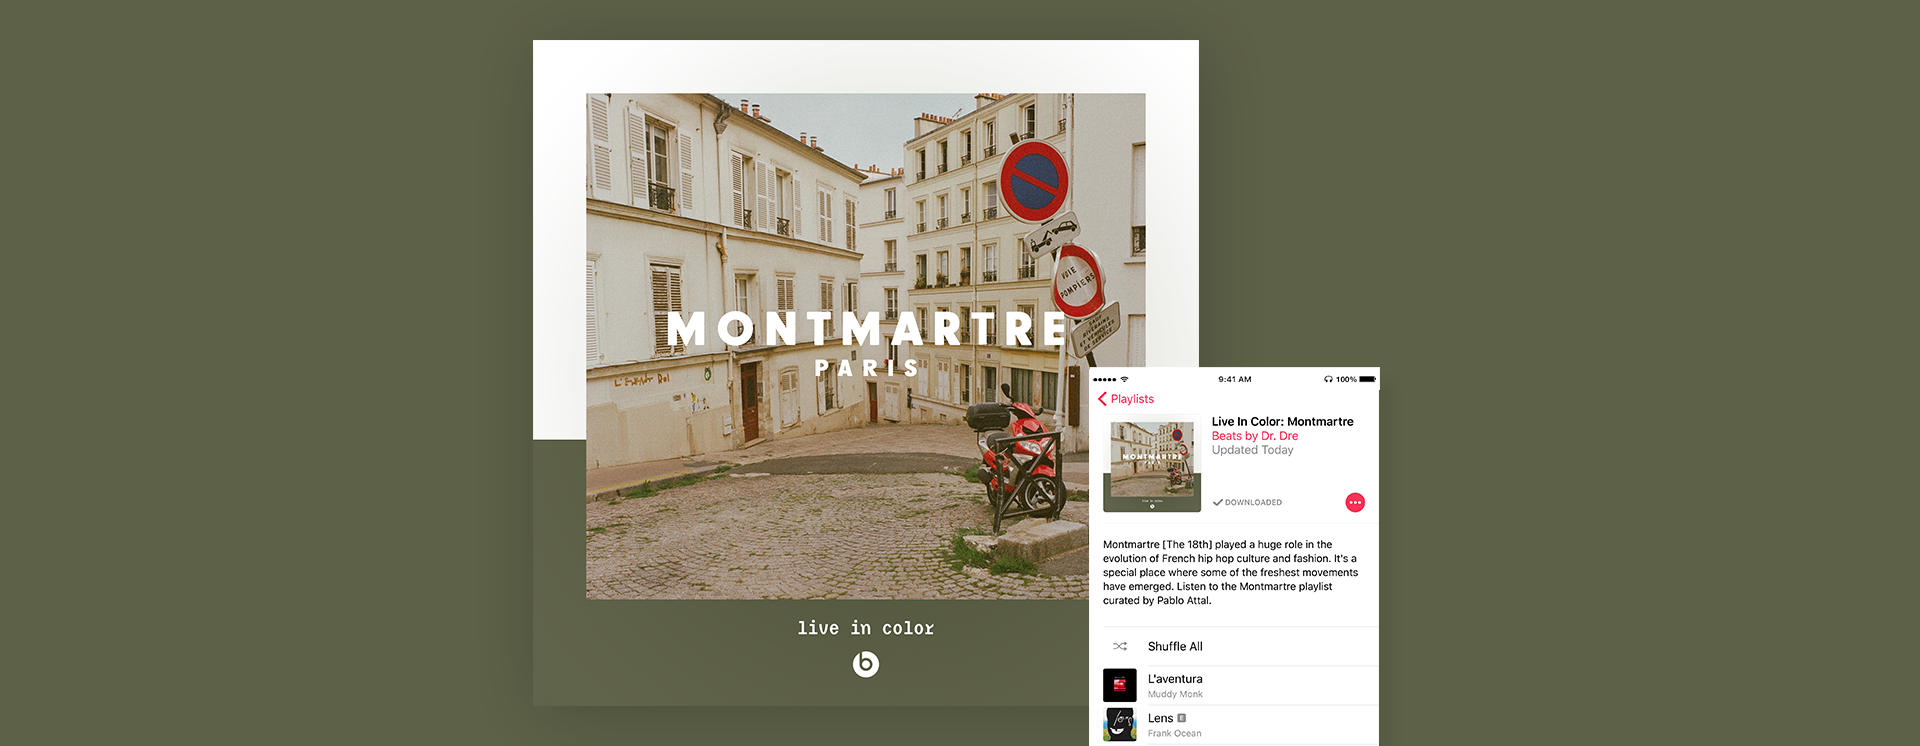 Playlist_Montmartre.png